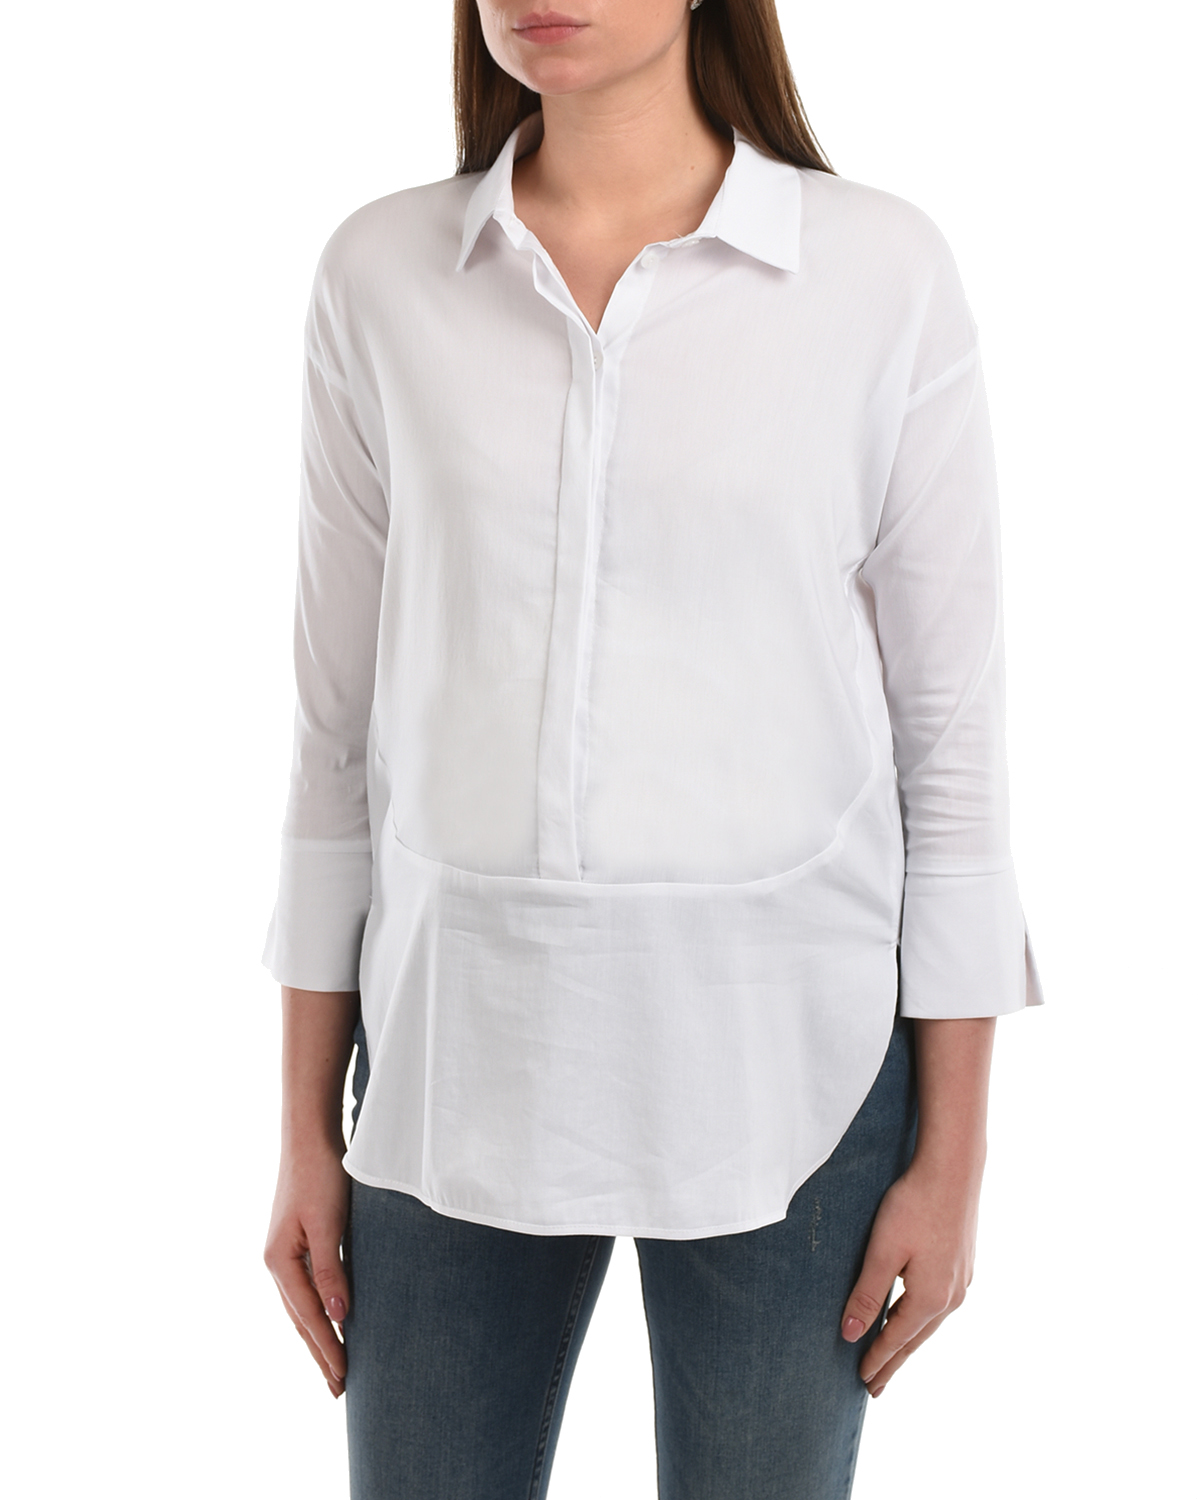 Белая блуза с рукавами 3/4 Attesa, размер 38, цвет белый Белая блуза с рукавами 3/4 Attesa - фото 7